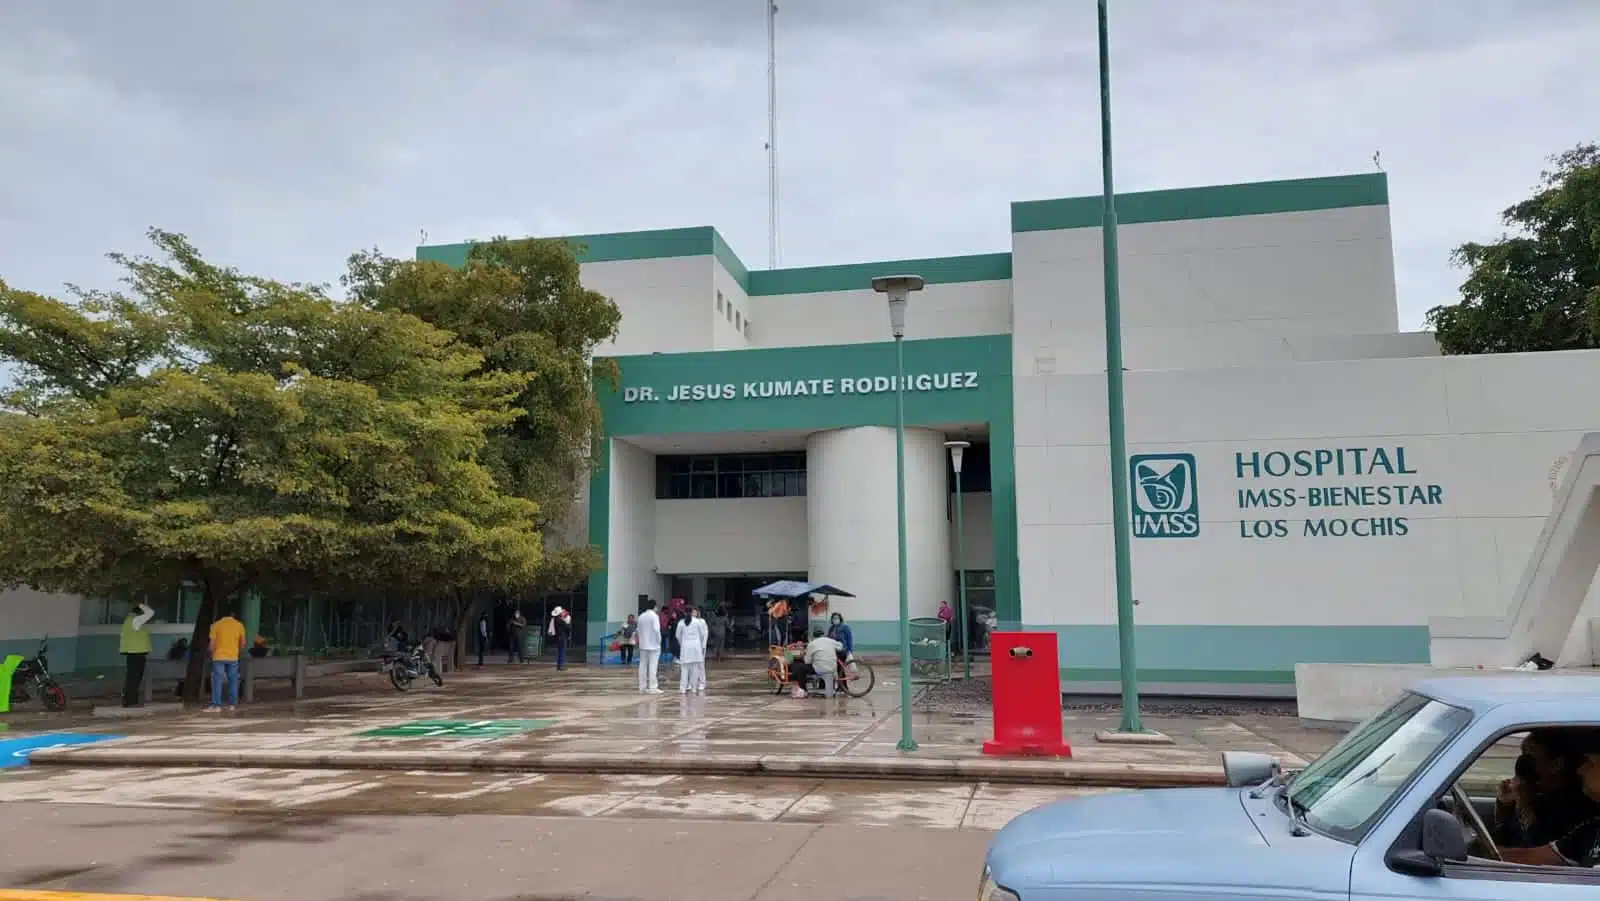 Hospital General de Los Mochis